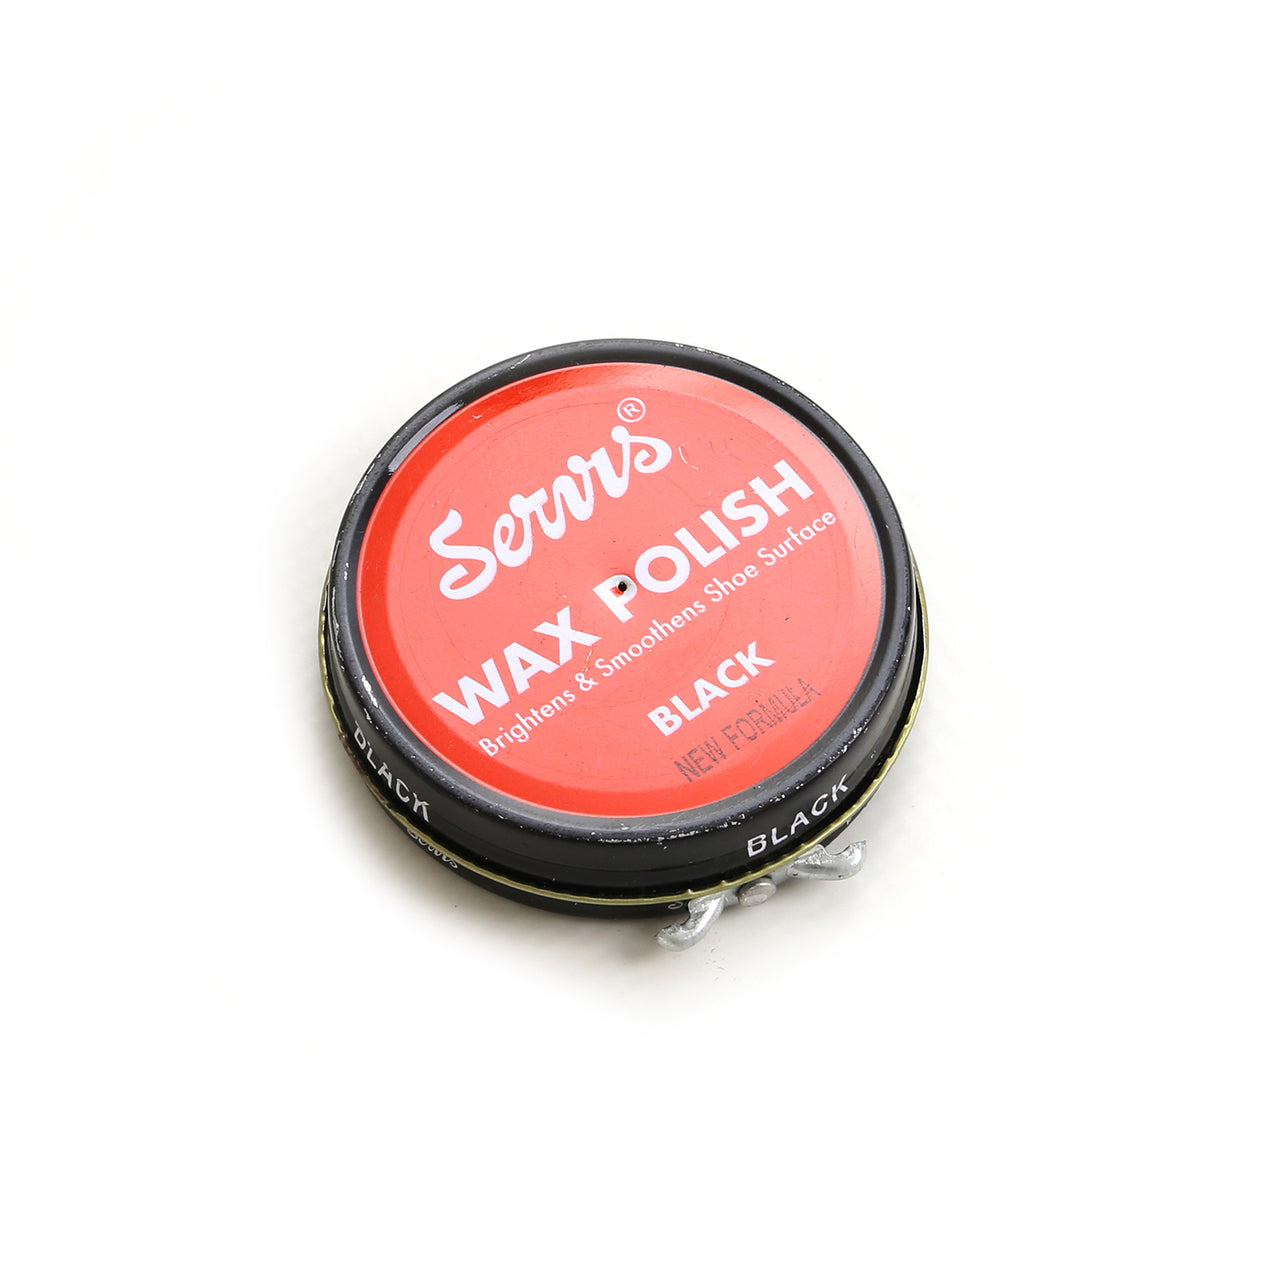 a-sb-0100027- wax polish